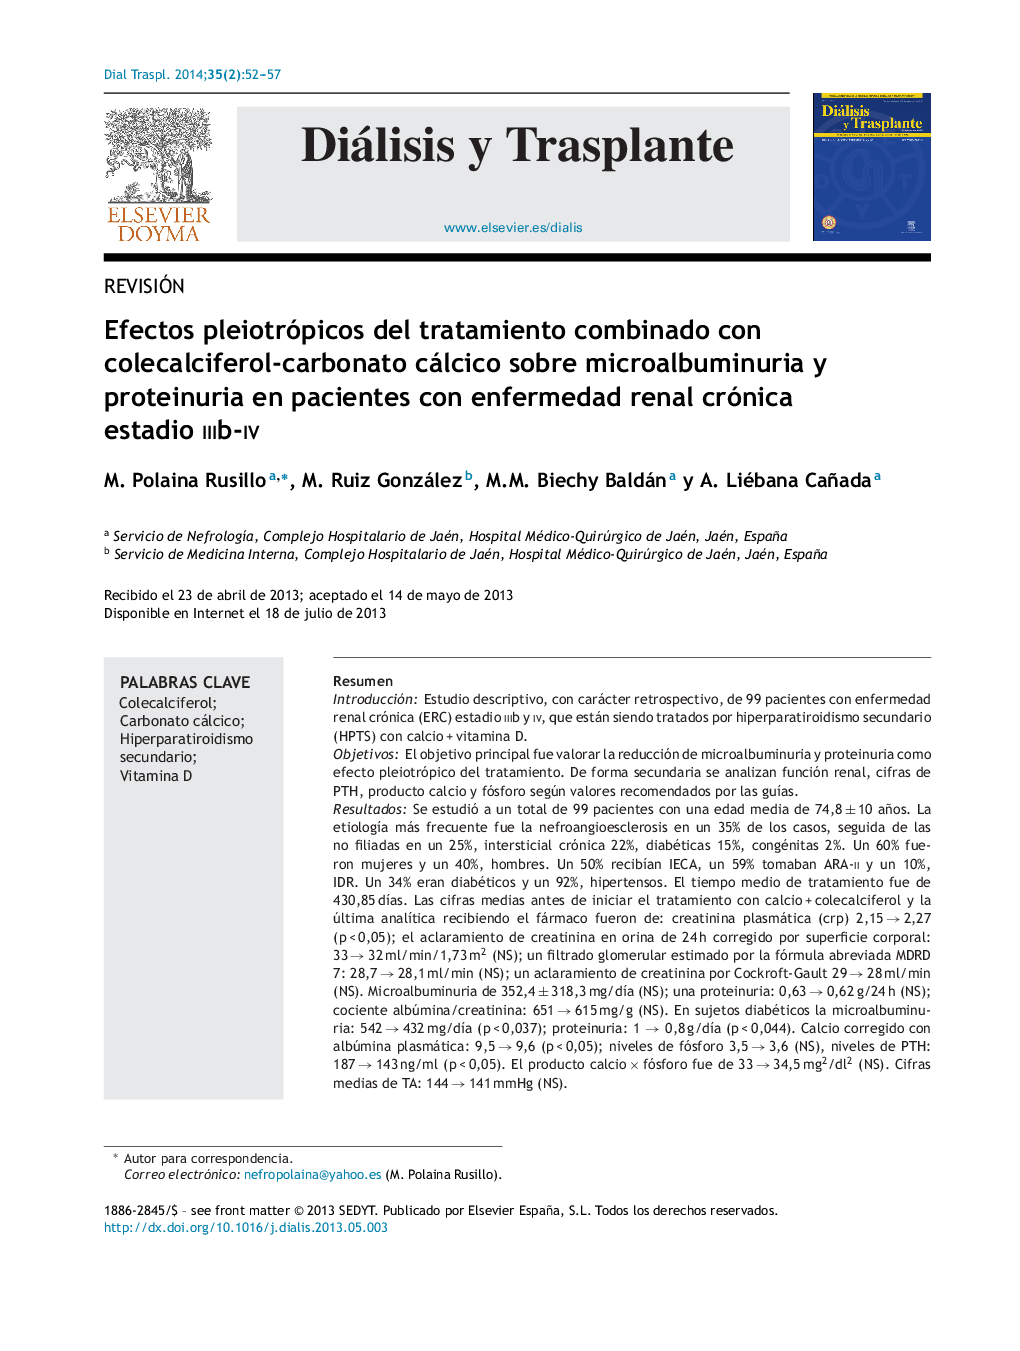 Efectos pleiotrópicos del tratamiento combinado con colecalciferol-carbonato cálcico sobre microalbuminuria y proteinuria en pacientes con enfermedad renal crónica estadio iiib-iv